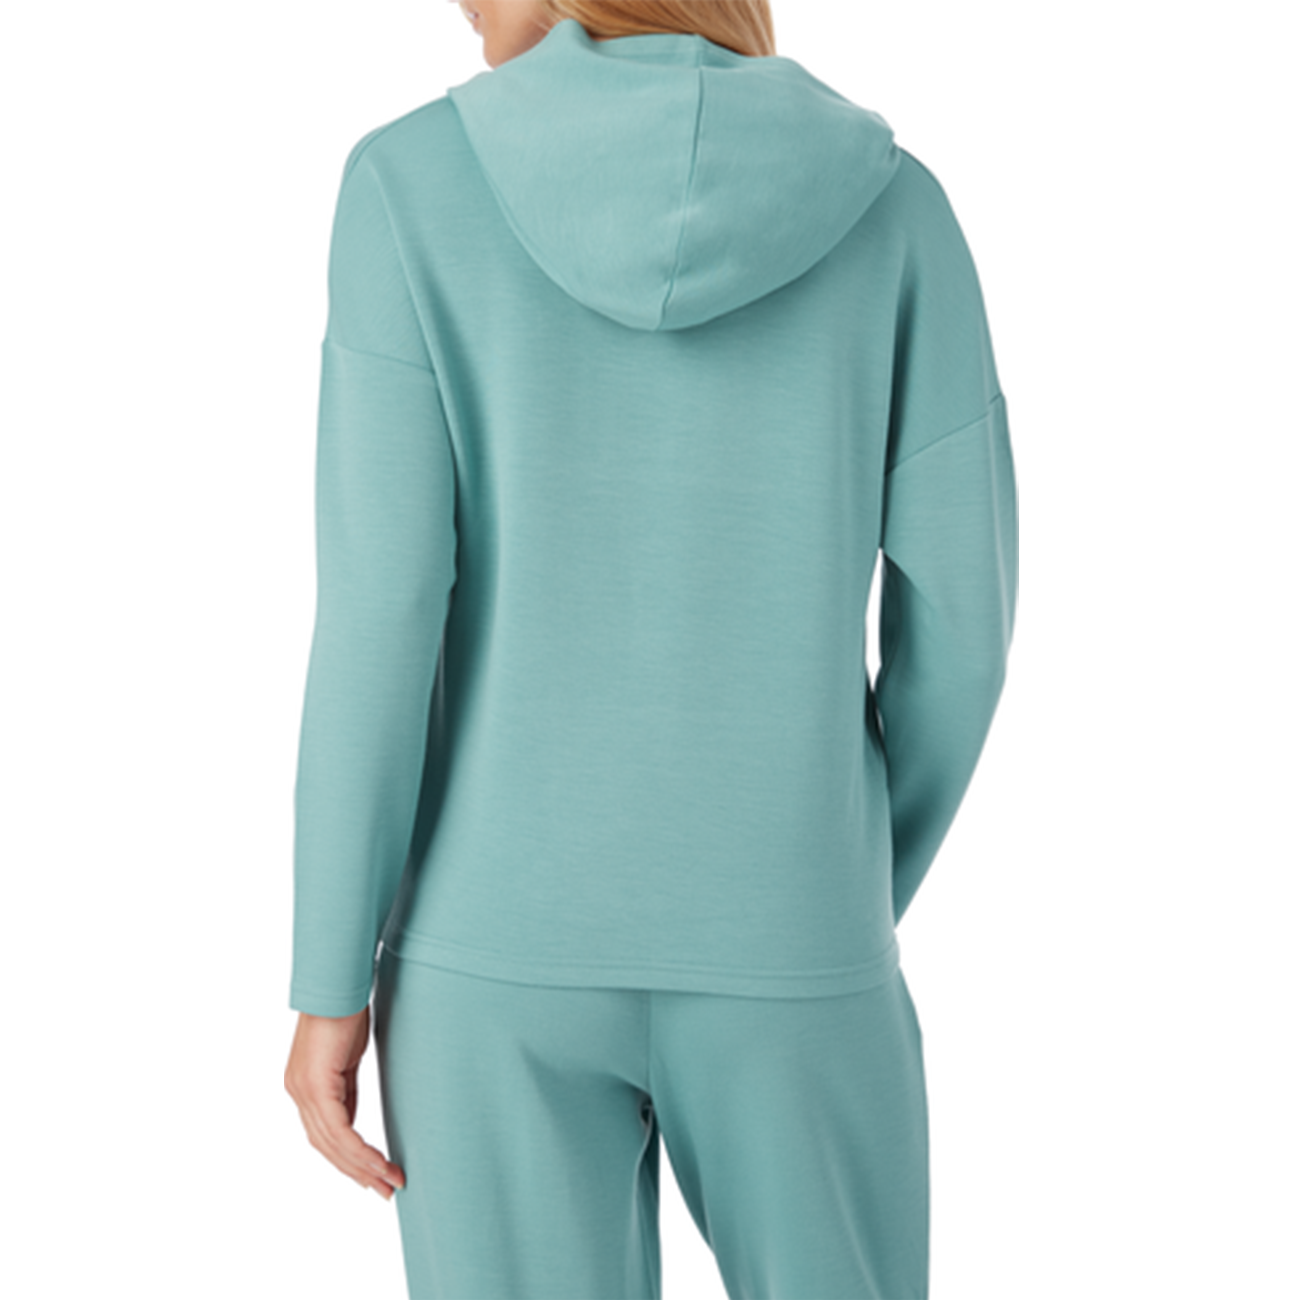 Energetics Oman Hooded Sweatshirt For Women, Turquoise